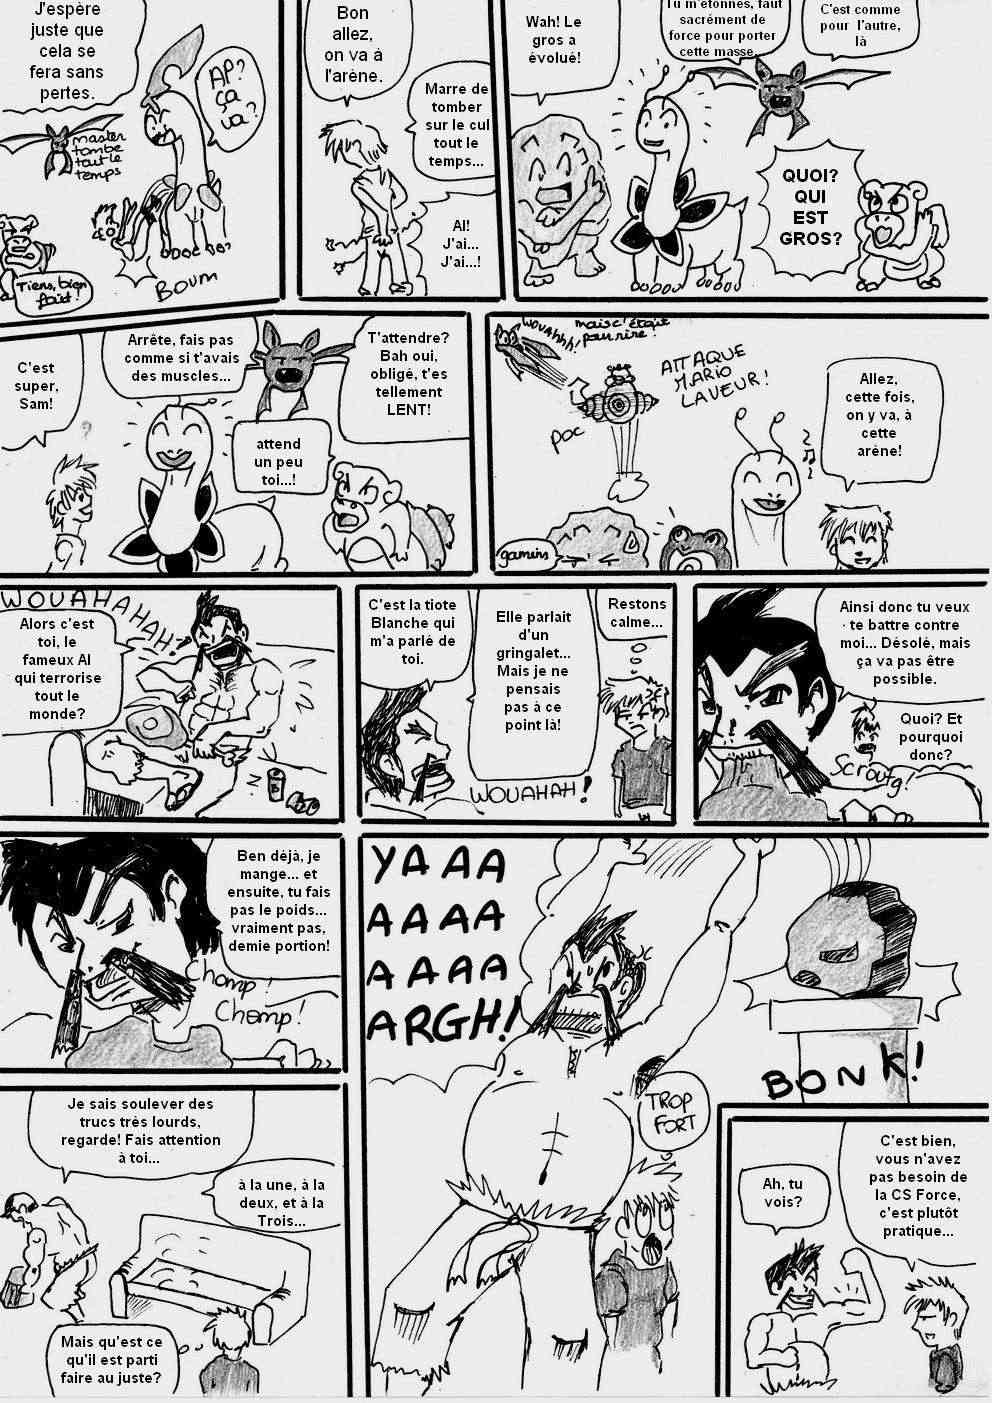 [Argent] shewolf's comic nuz - Page 21 Planch16